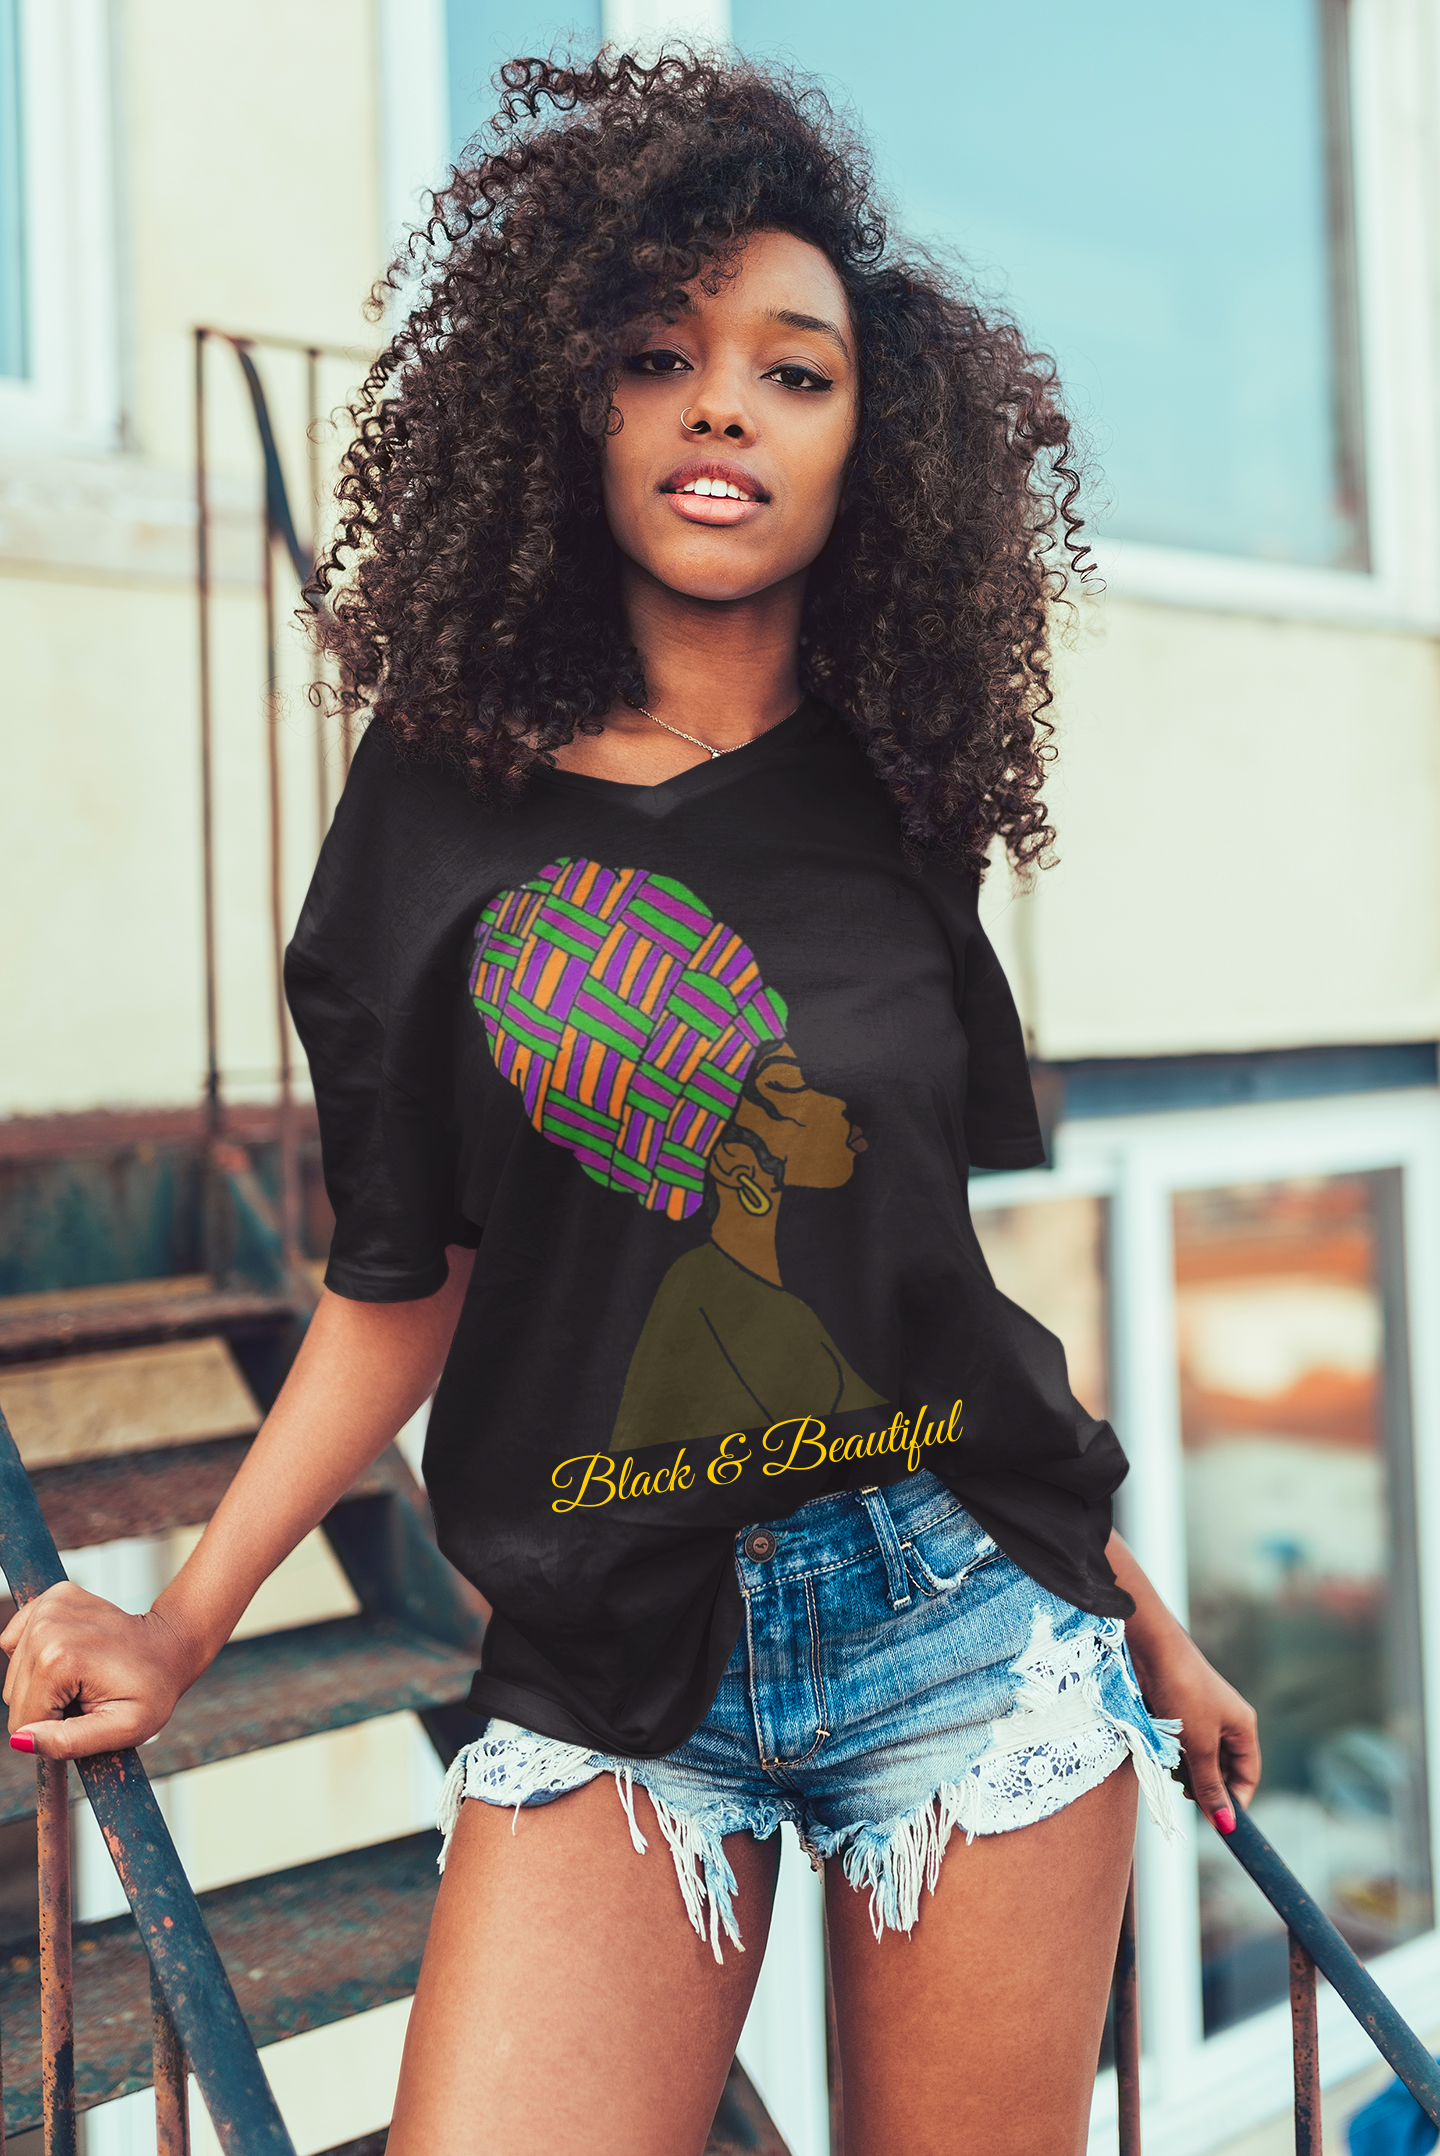 Black & Beautiful Women & Girls T-Shirt